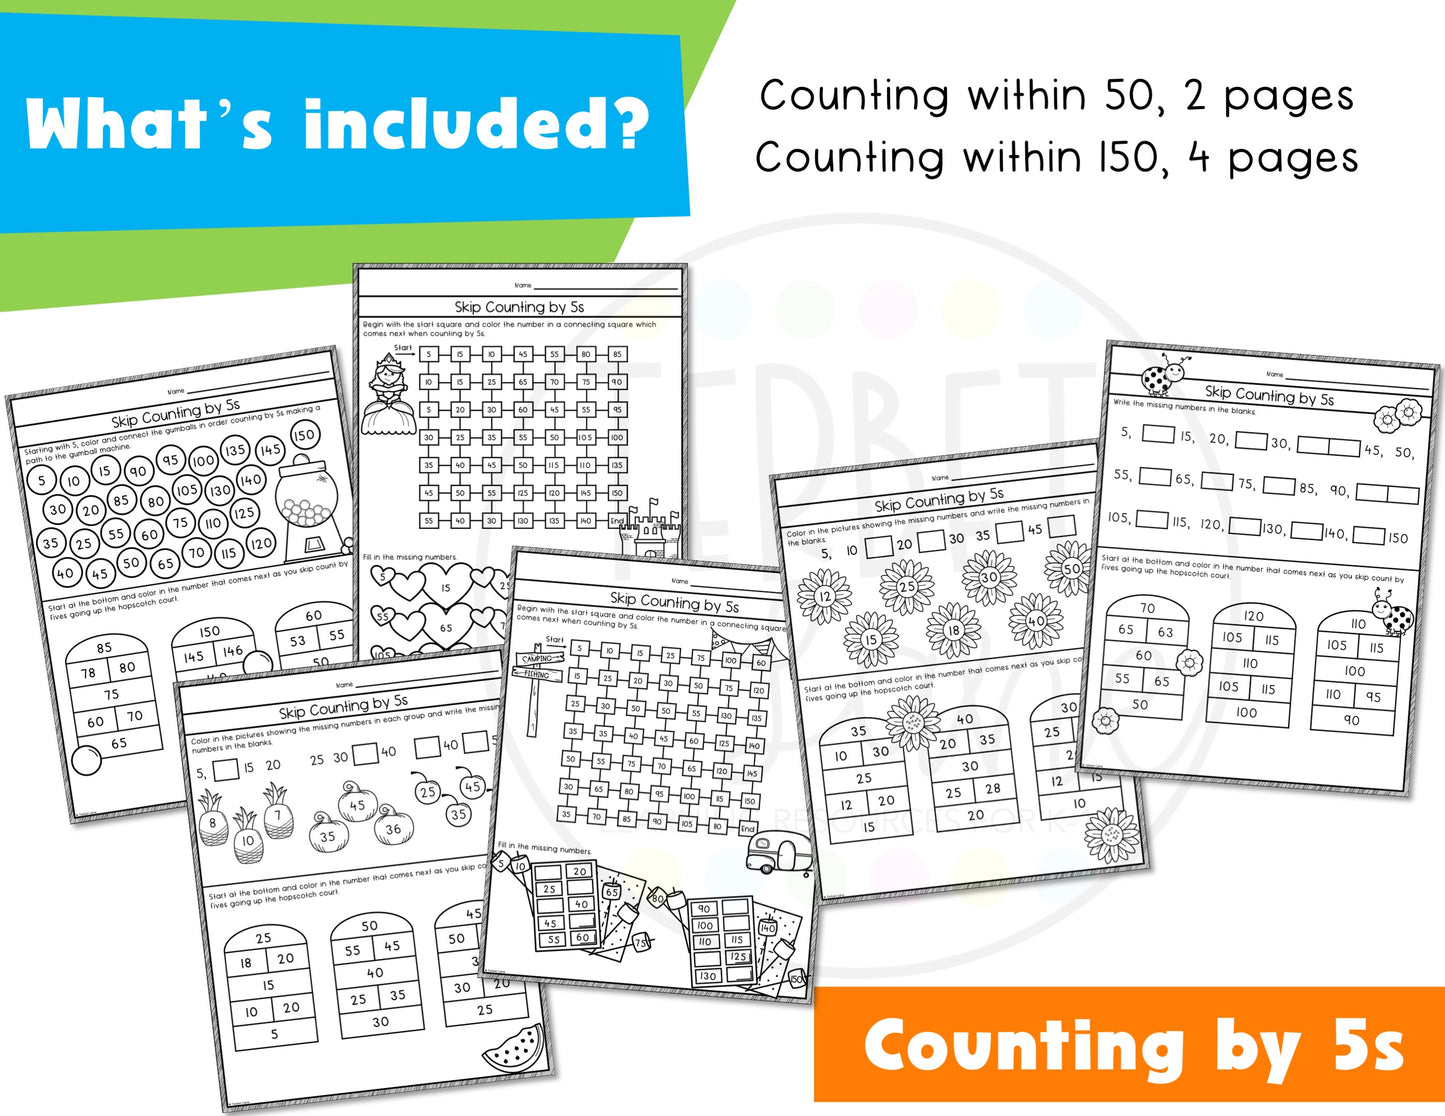 Skip Counting Math Worksheets